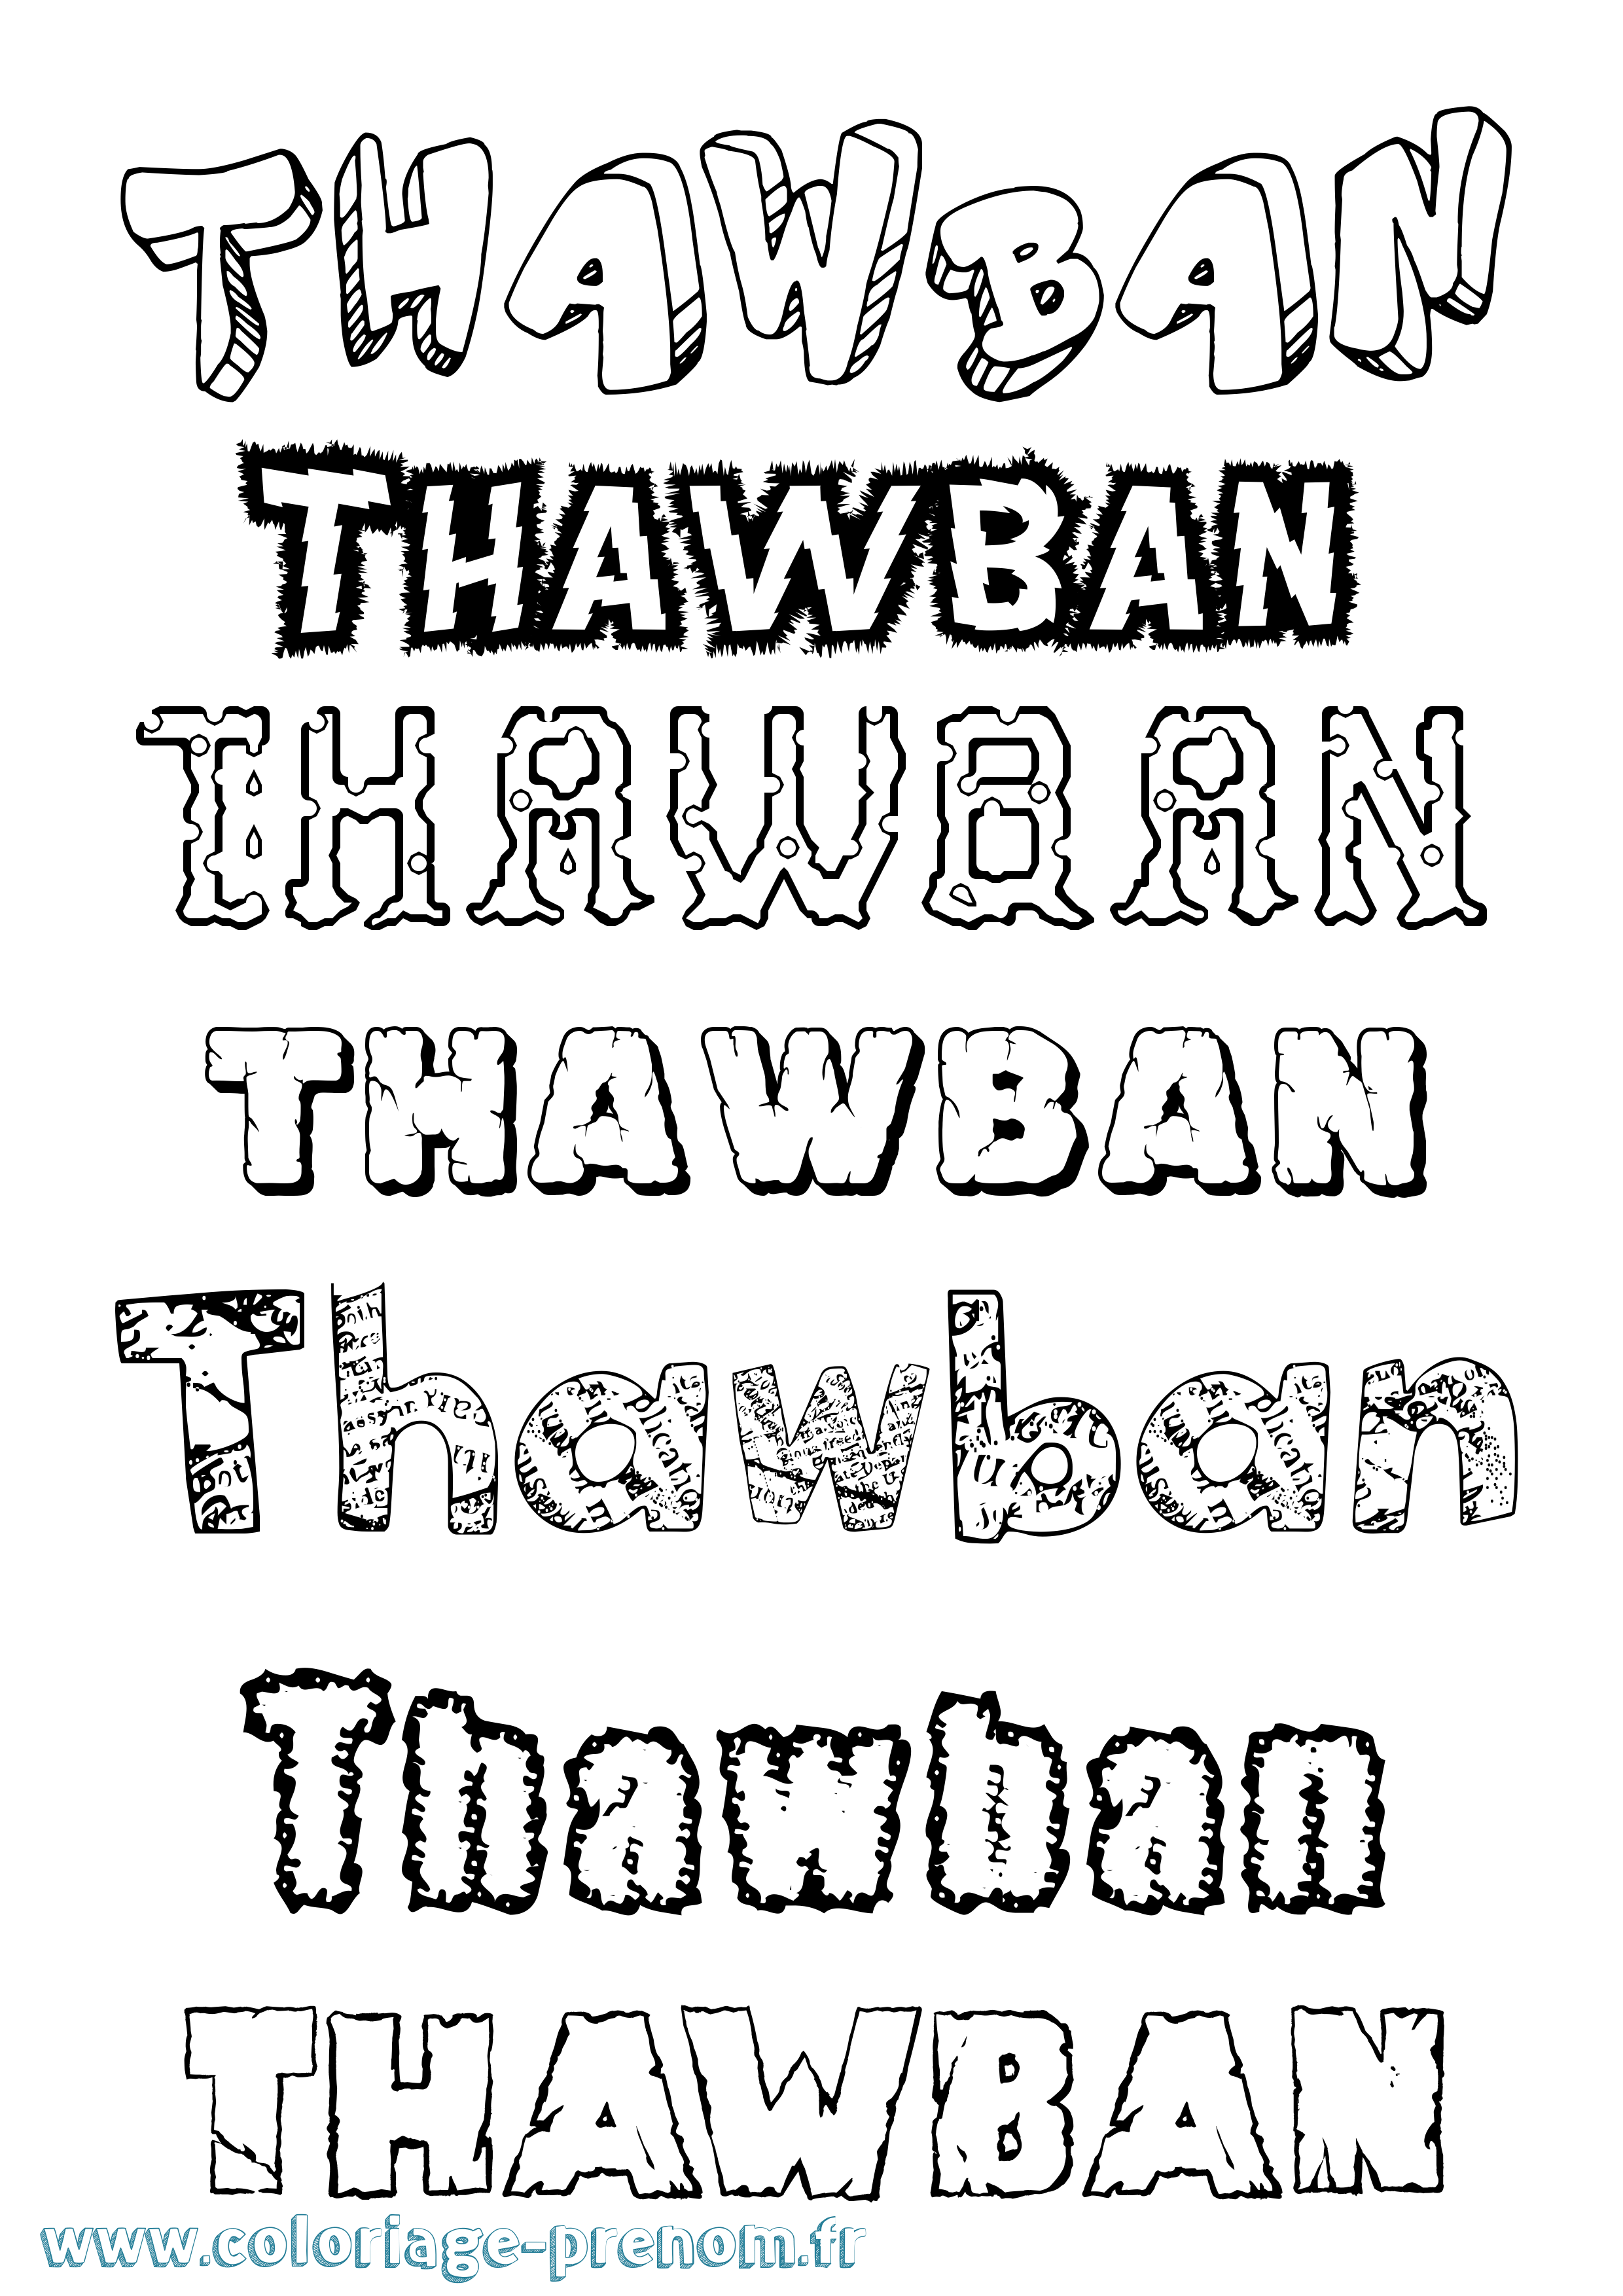 Coloriage prénom Thawban Destructuré